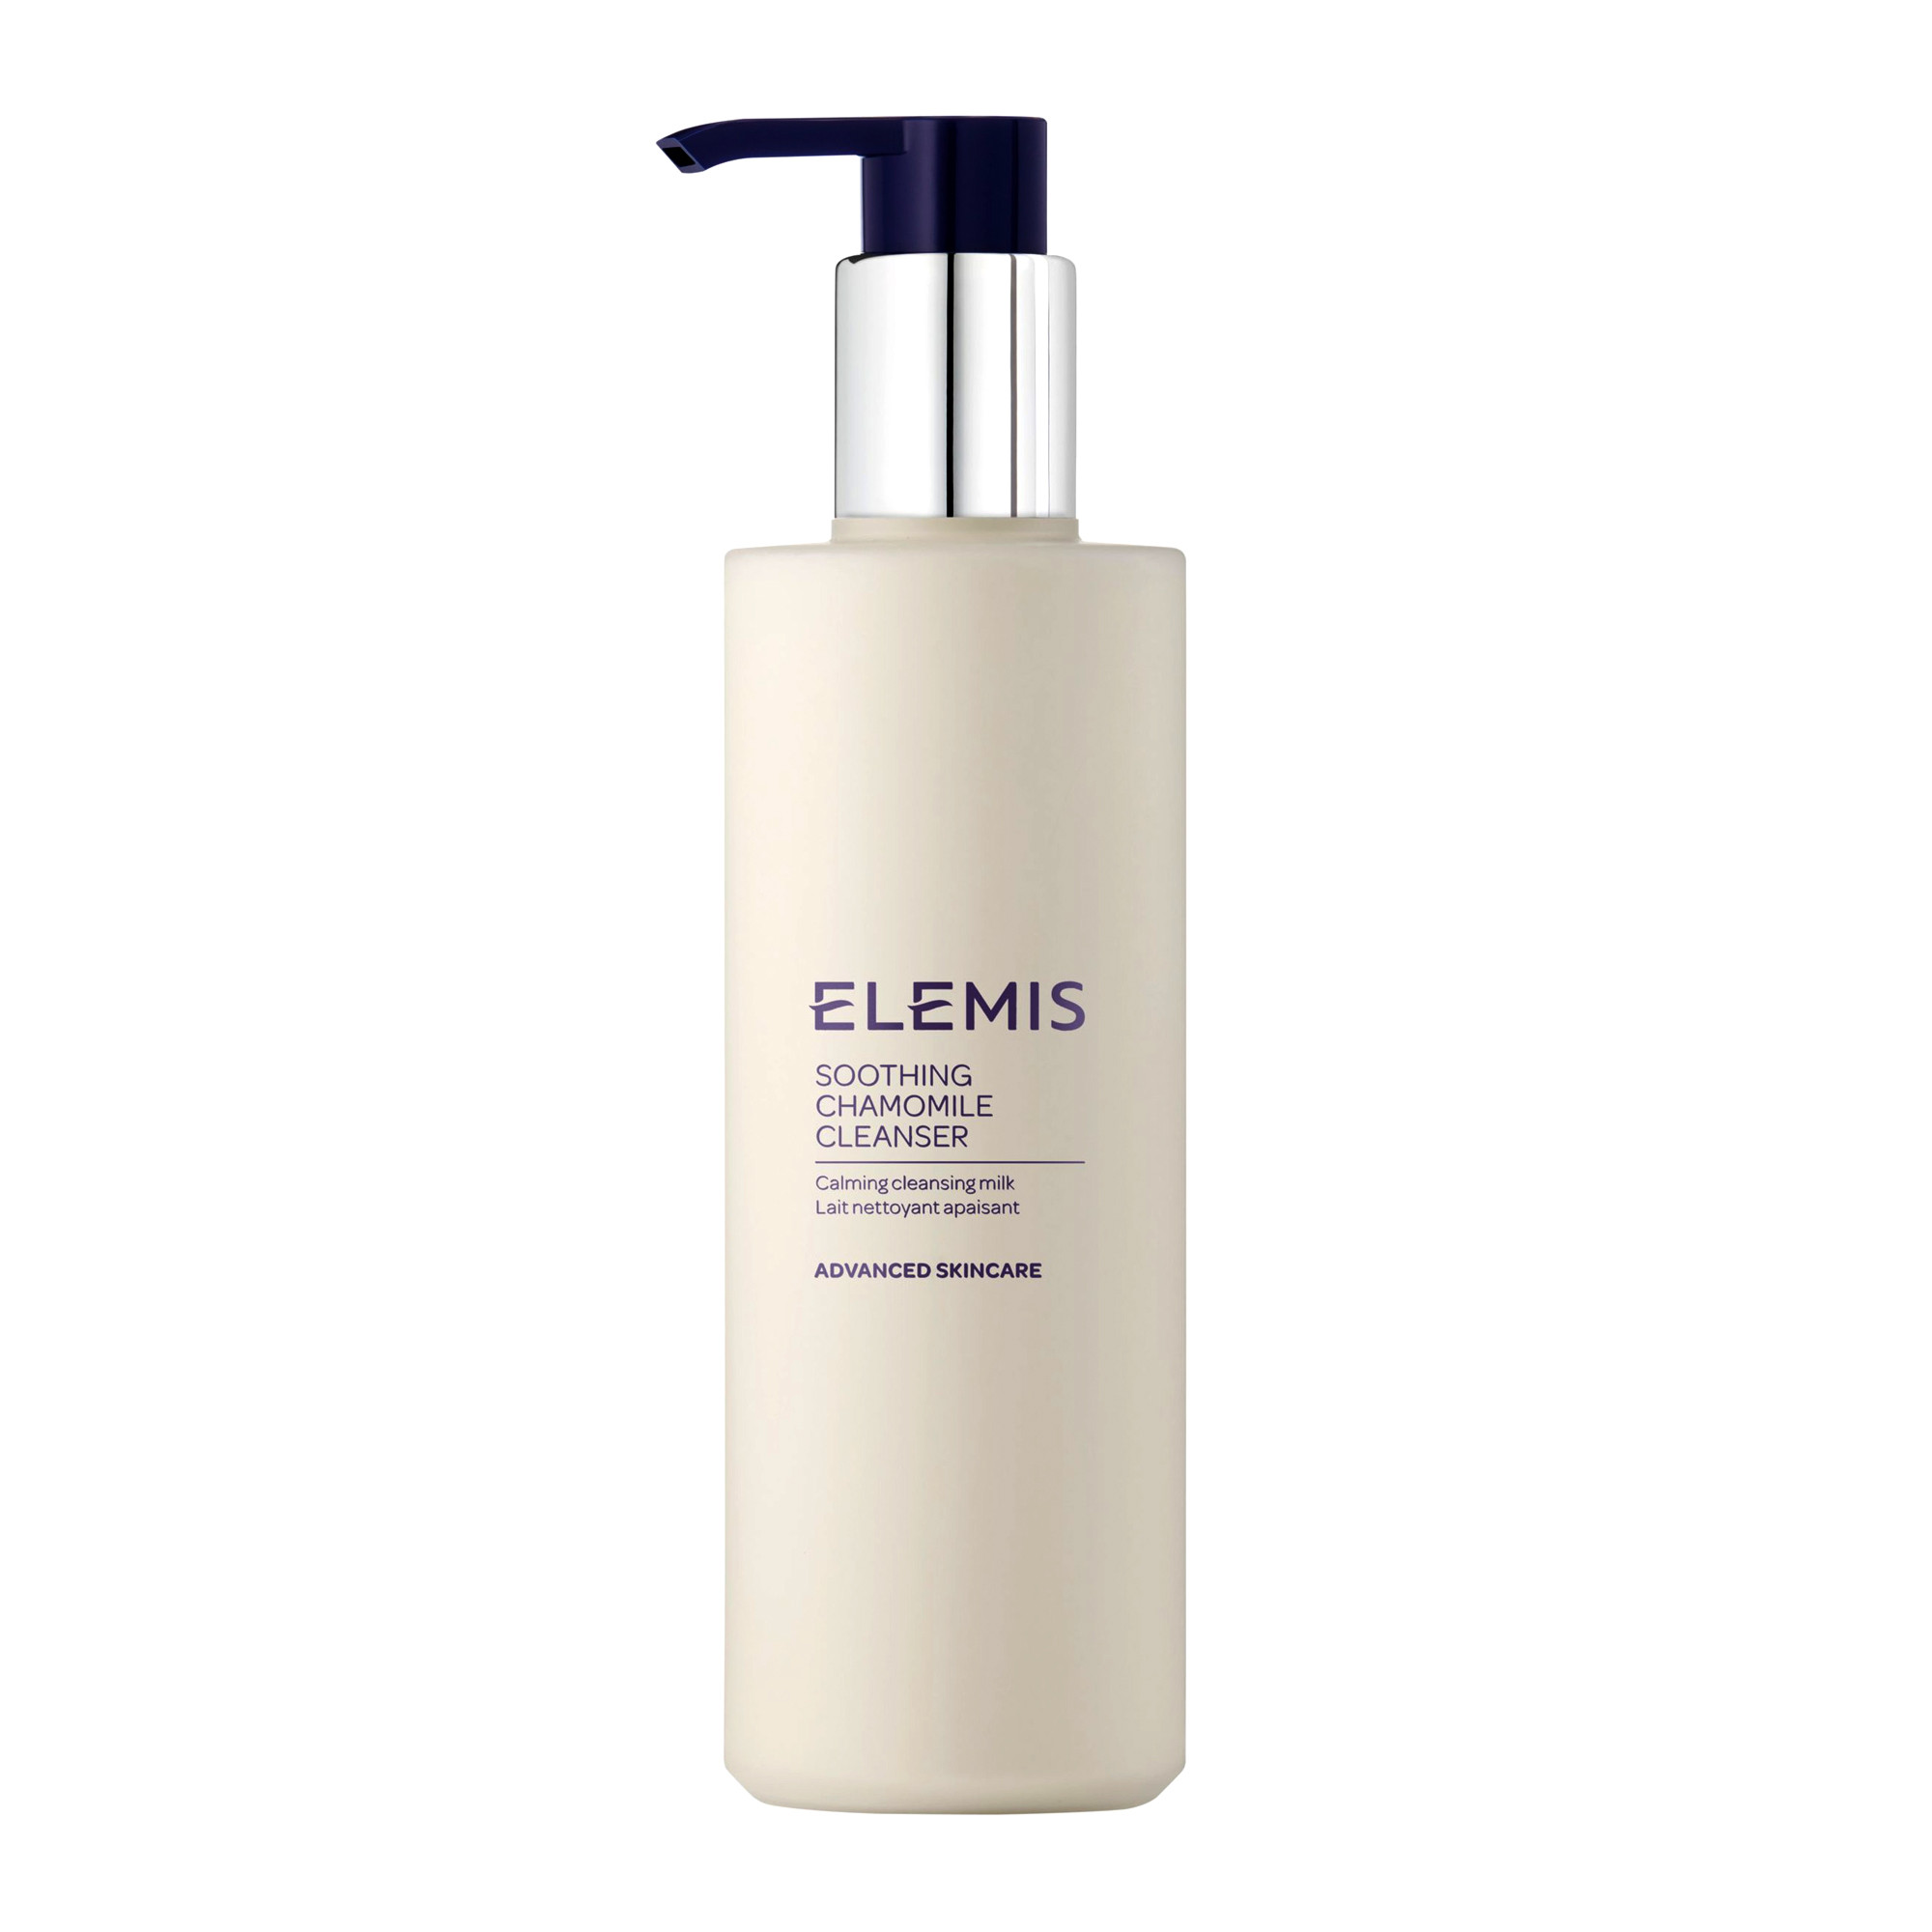 Отзывы о Elemis Soothing Chamomile Cleanser - Очищающее молочко для чувствительной кожи Ромашка